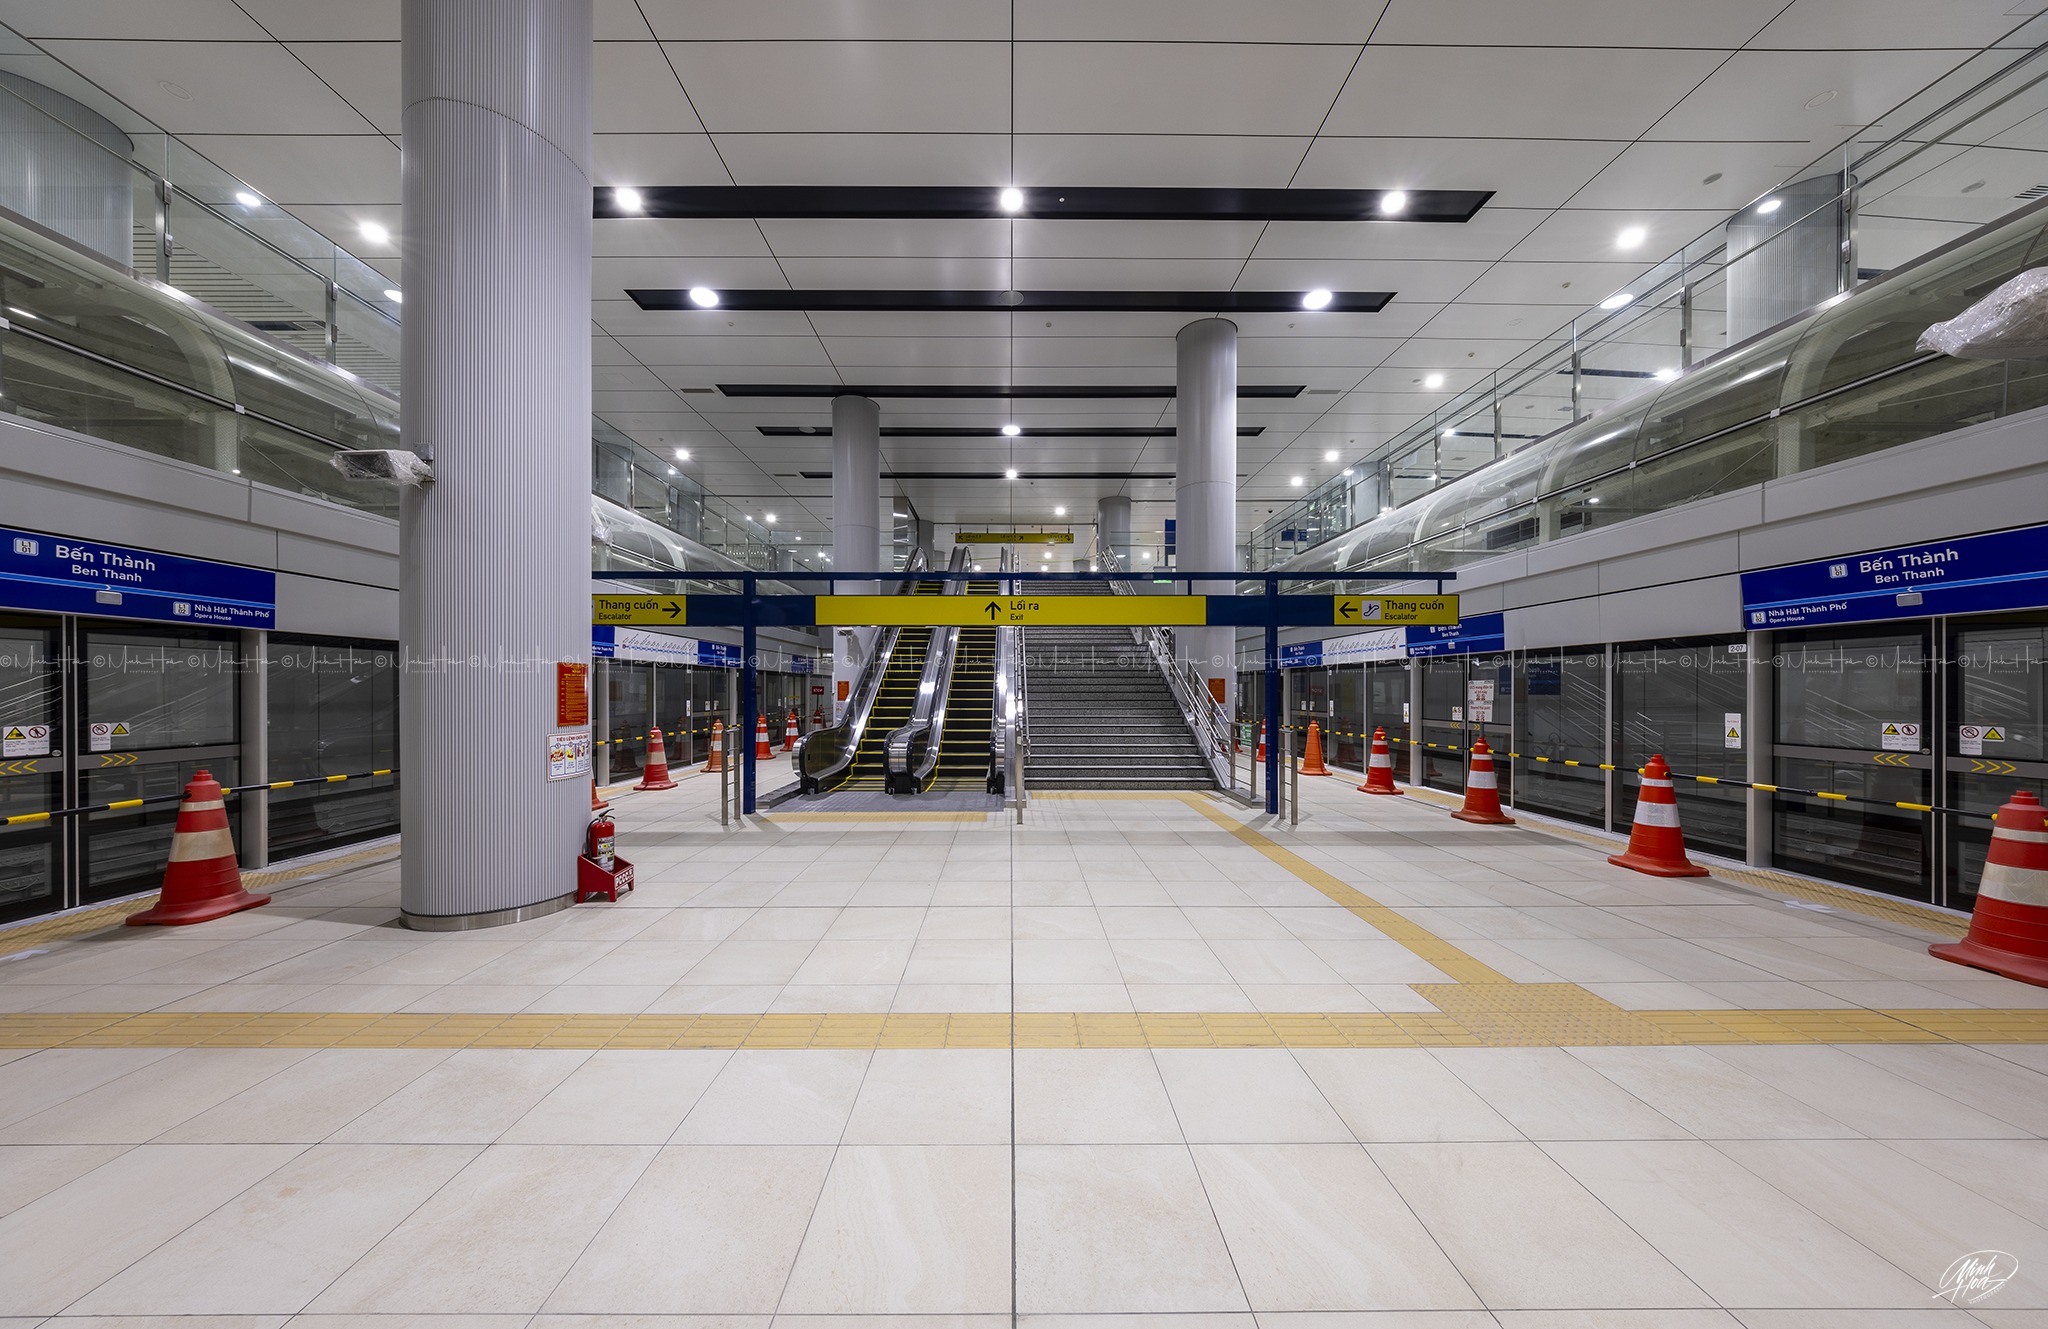 Ga Trung tâm Bến Thành là nhà ga lớn nhất của mạng lưới đường sắt đô thị thành phố với chiều dài 236m, rộng 60m, độ sâu 32m. Ngoài phục vụ hành khách tuyến metro số 1, ga Trung tâm Bến Thành còn là điểm trung chuyển, kết nối các tuyến metro khác và các địa danh ở khu vực trung tâm thành phố như chợ Bến Thành, Công viên 23/9 thông qua 6 lối lên xuống